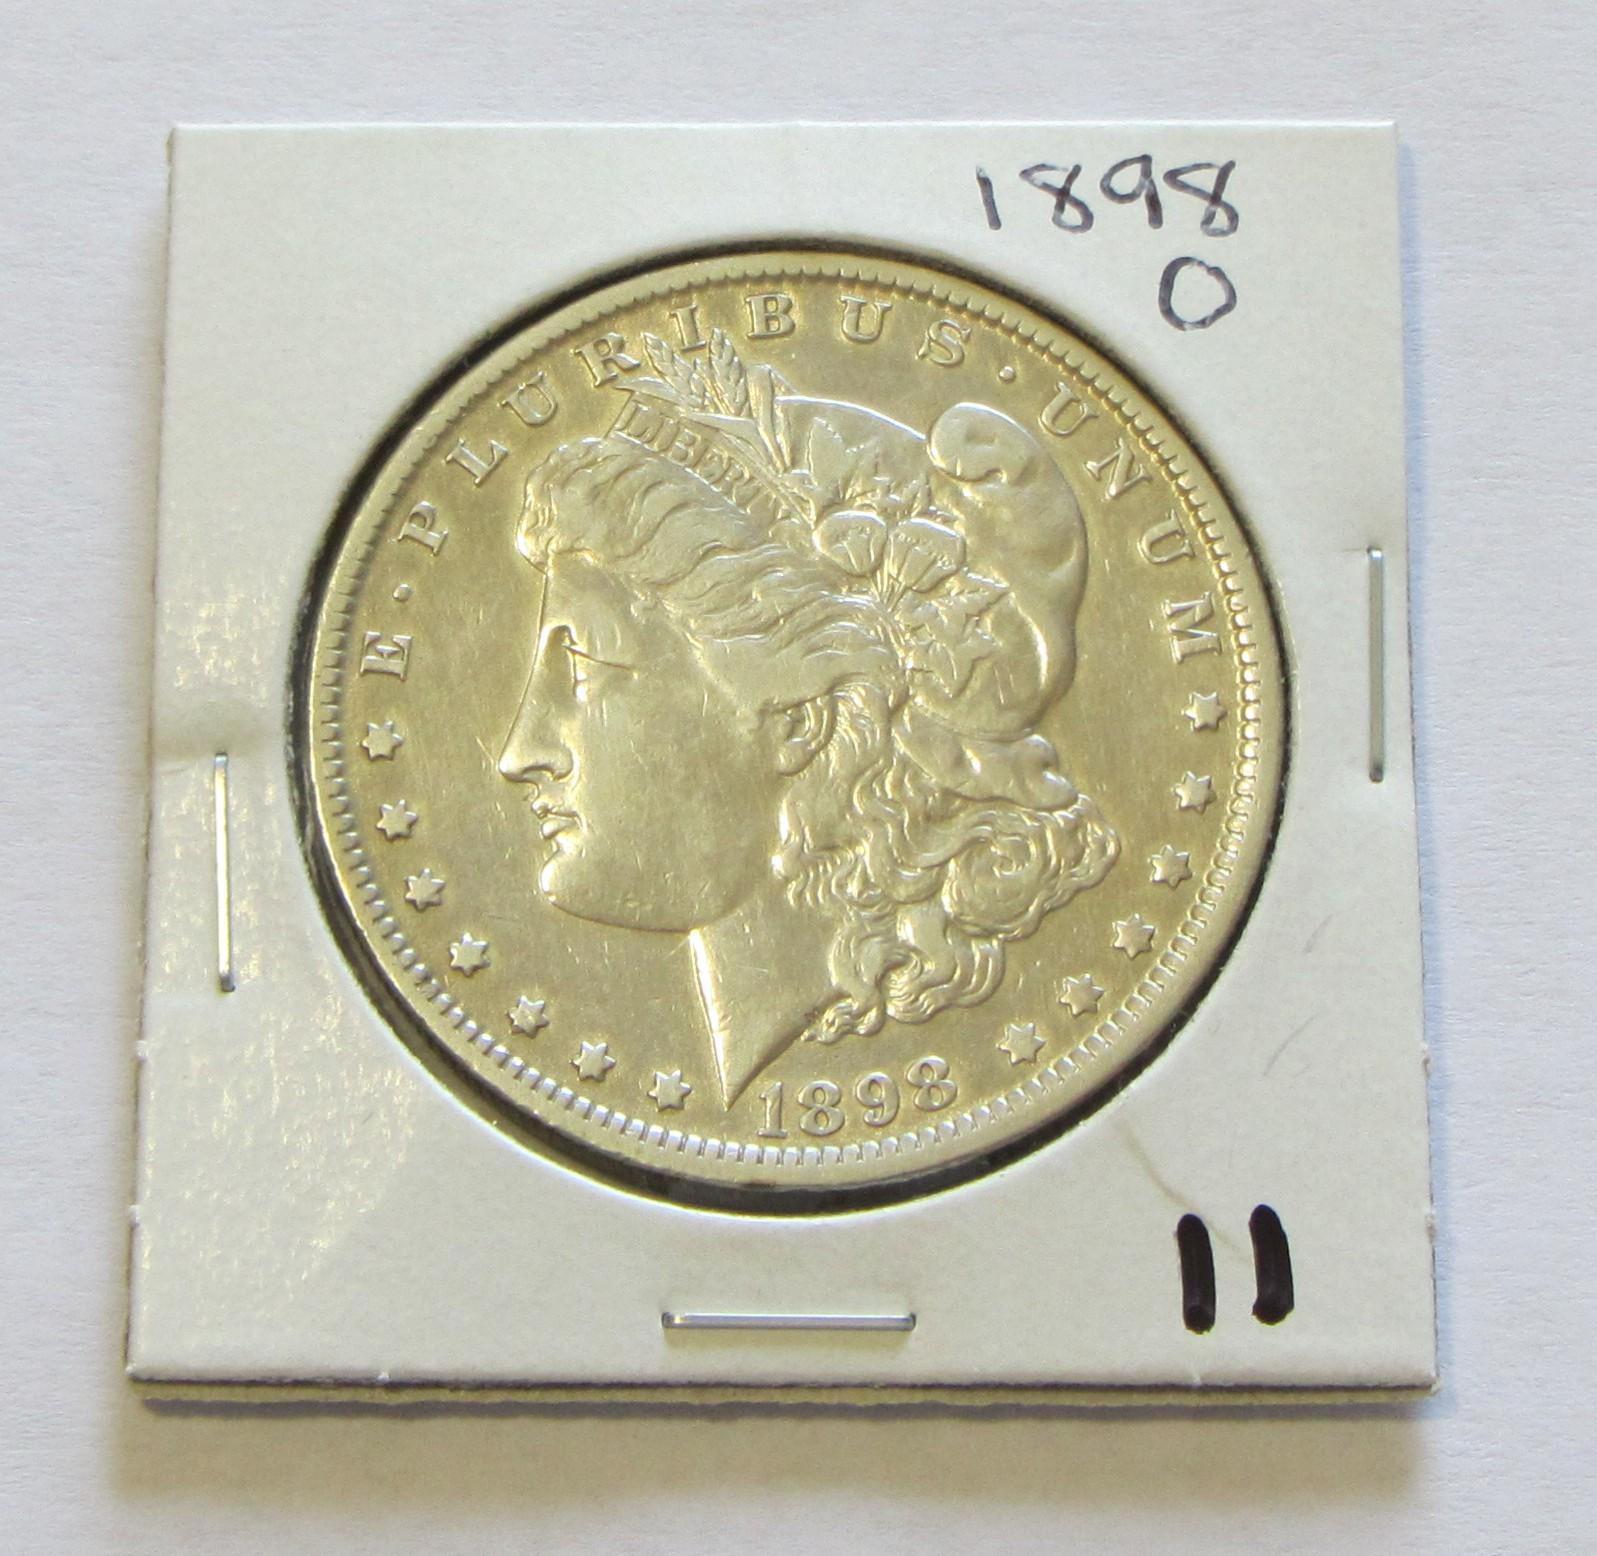 $1 1898-O MORGAN